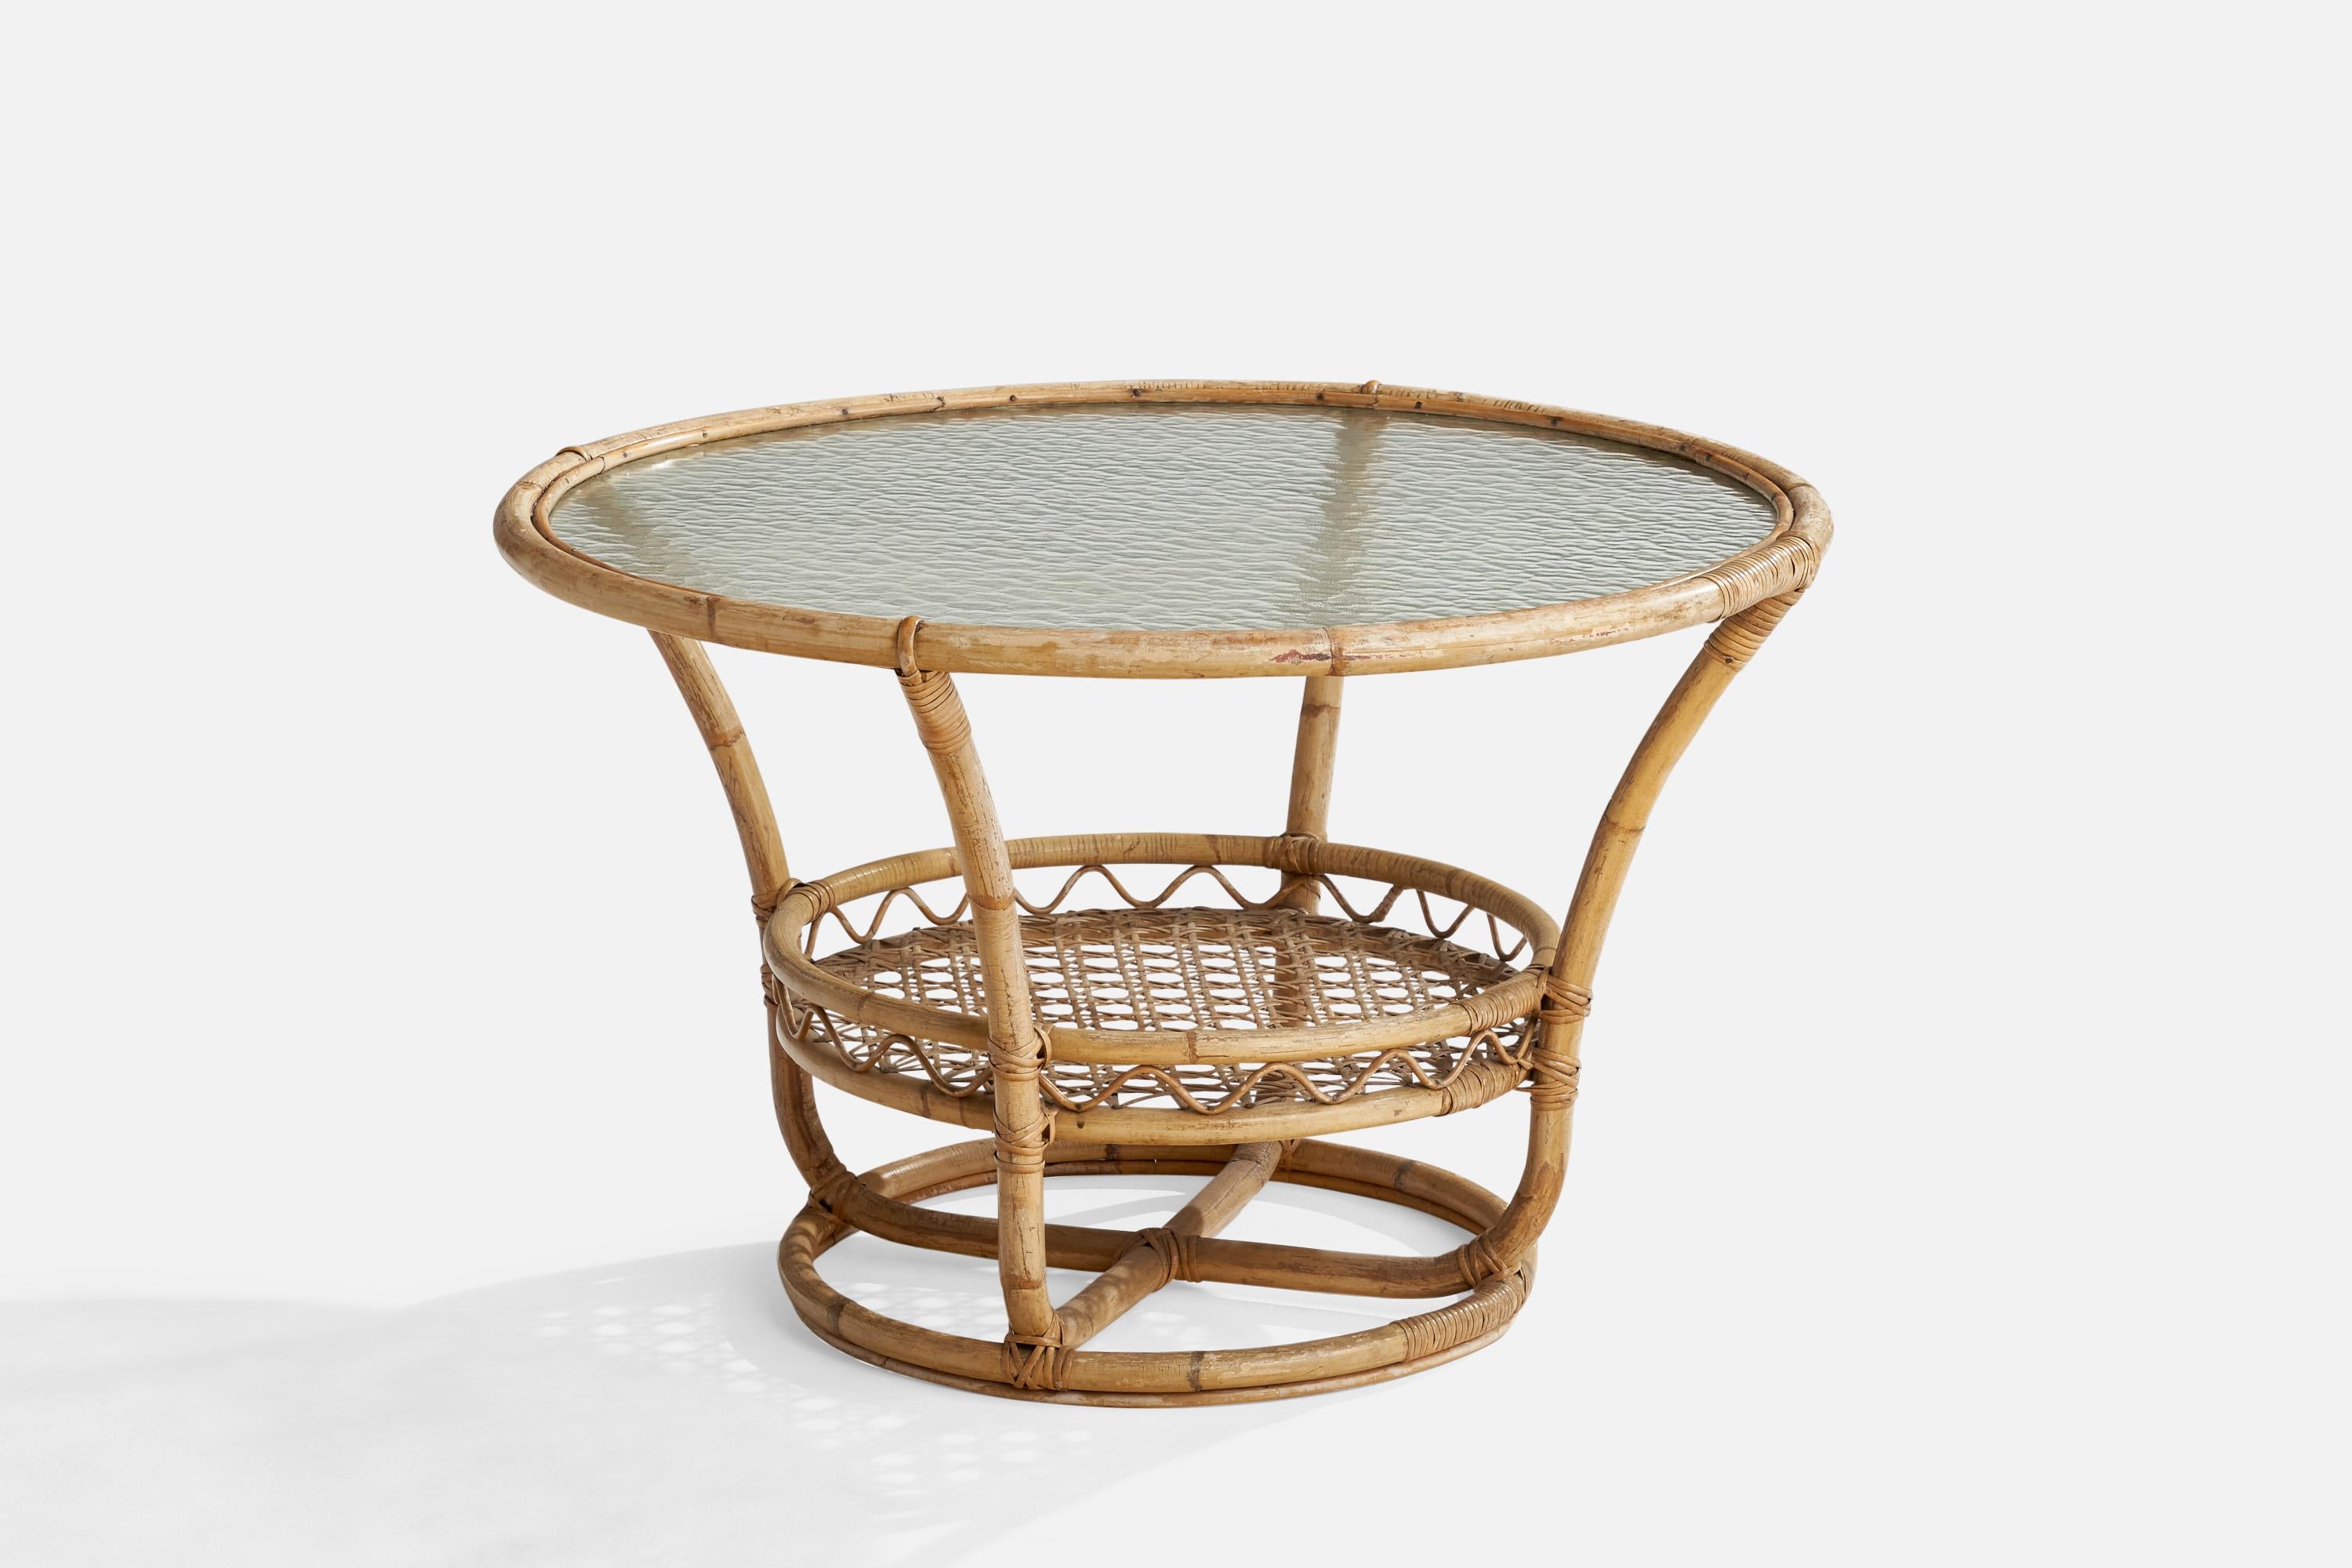 Table d'appoint en bambou moulé, rotin et verre, conçue et produite en Suède, années 1950.